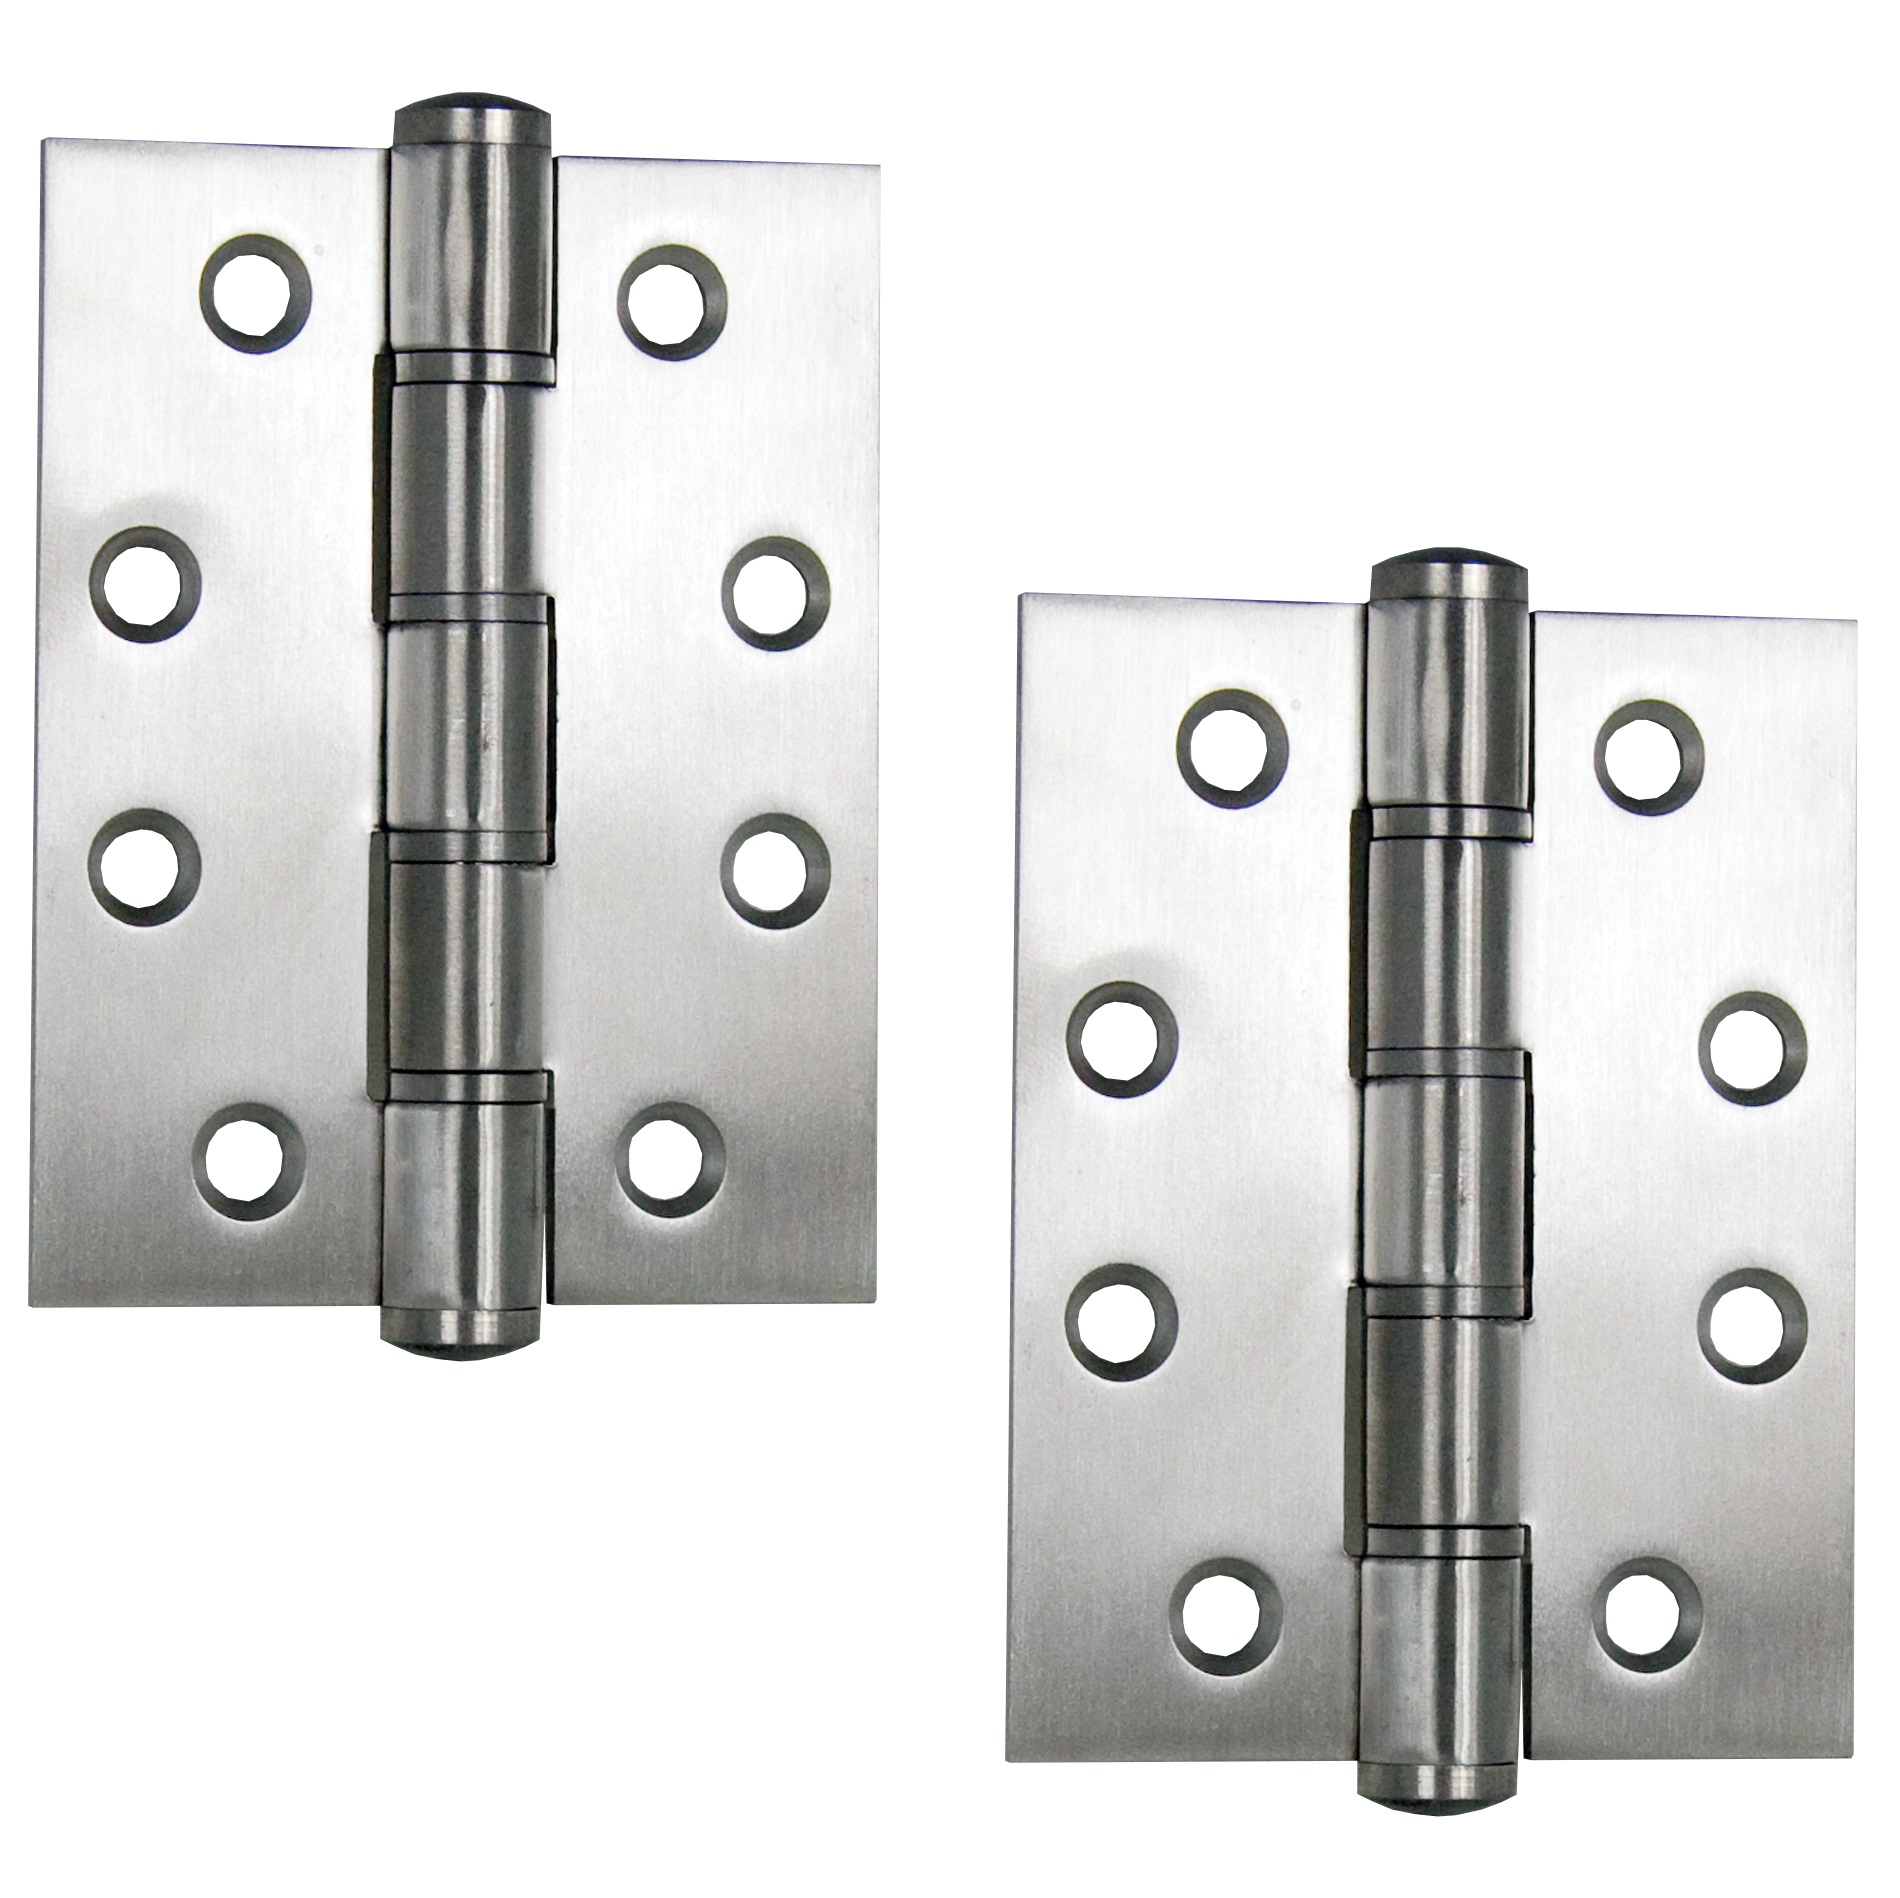 2 Stück hochwertige UMAXO® Edelstahl Tür-Scharniere 102mm, eckige Form,  inkl. Schrauben. Türband für schwere Türen. Edelstahlscharnier SUS304  (V2A)